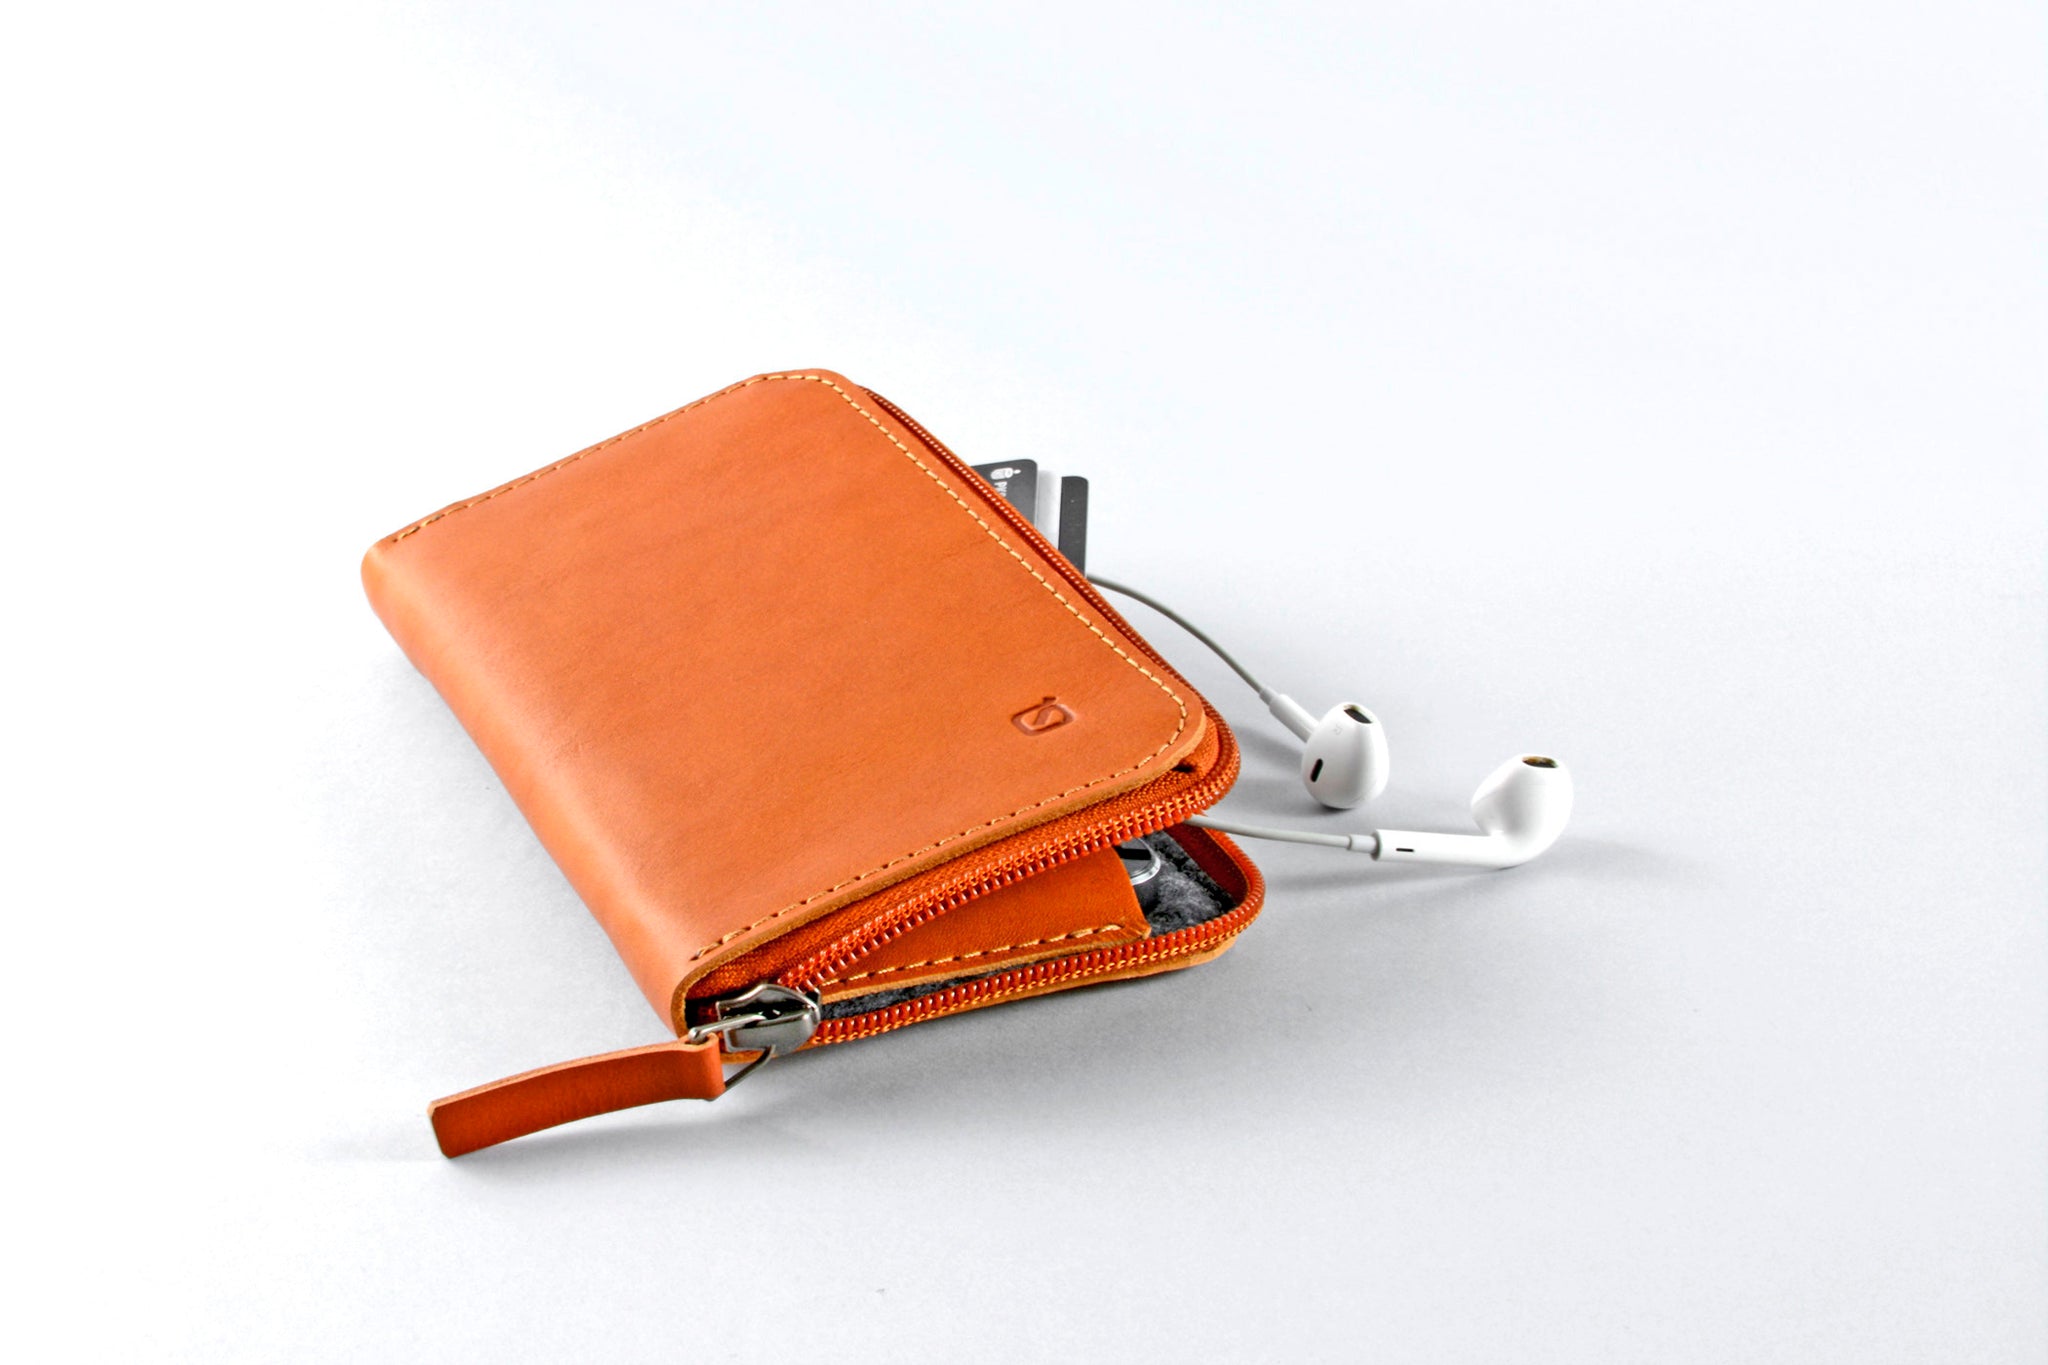 Cuvierr - Portofino Orange & Riviera Blue Strap Apple iPhone 12